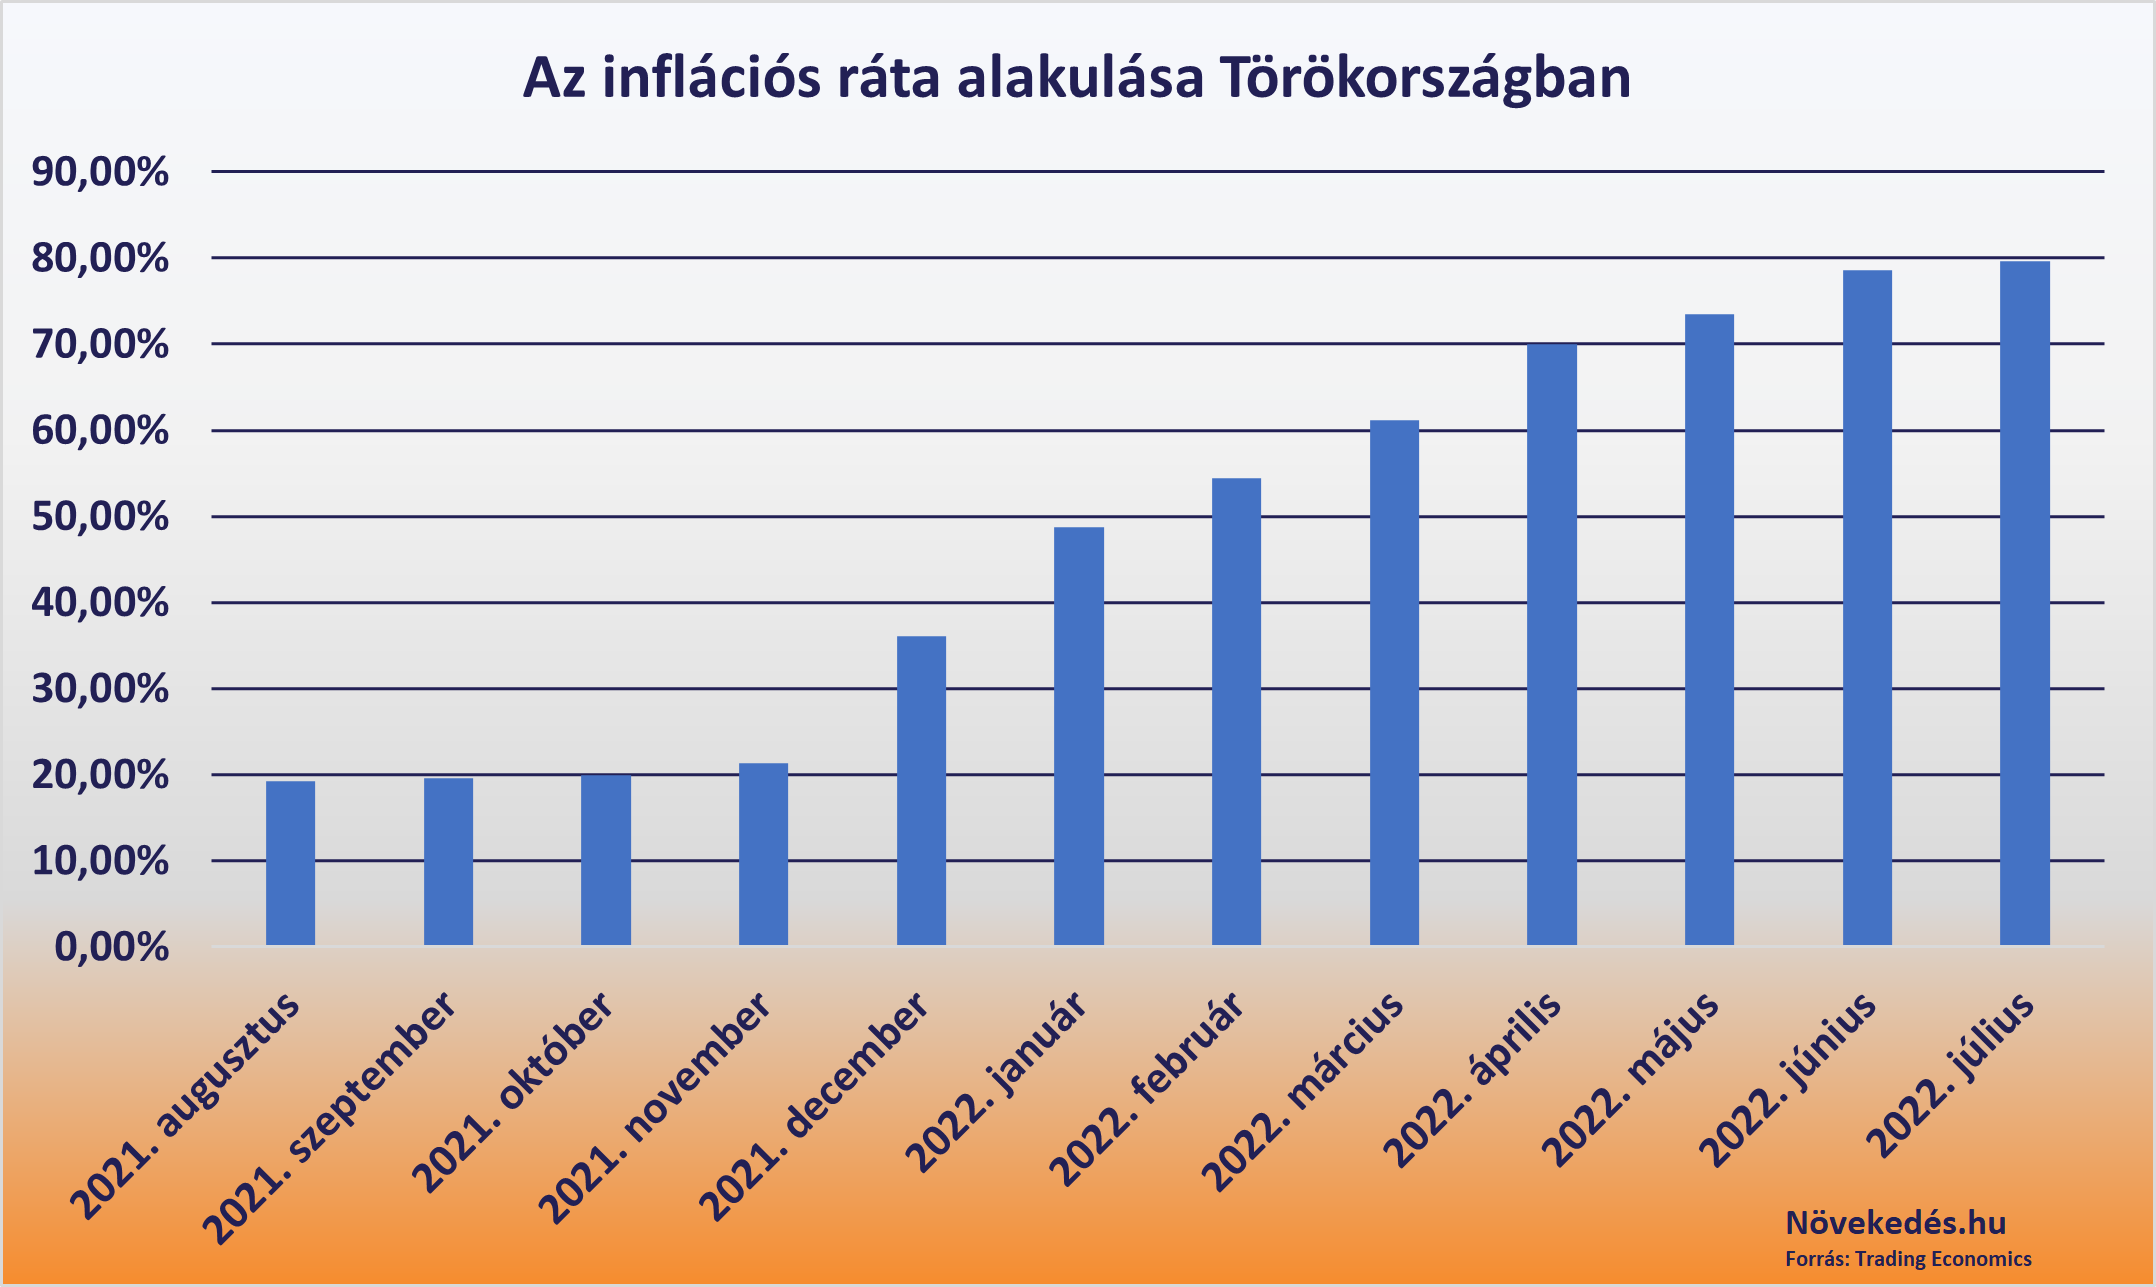 török infláció alakulása